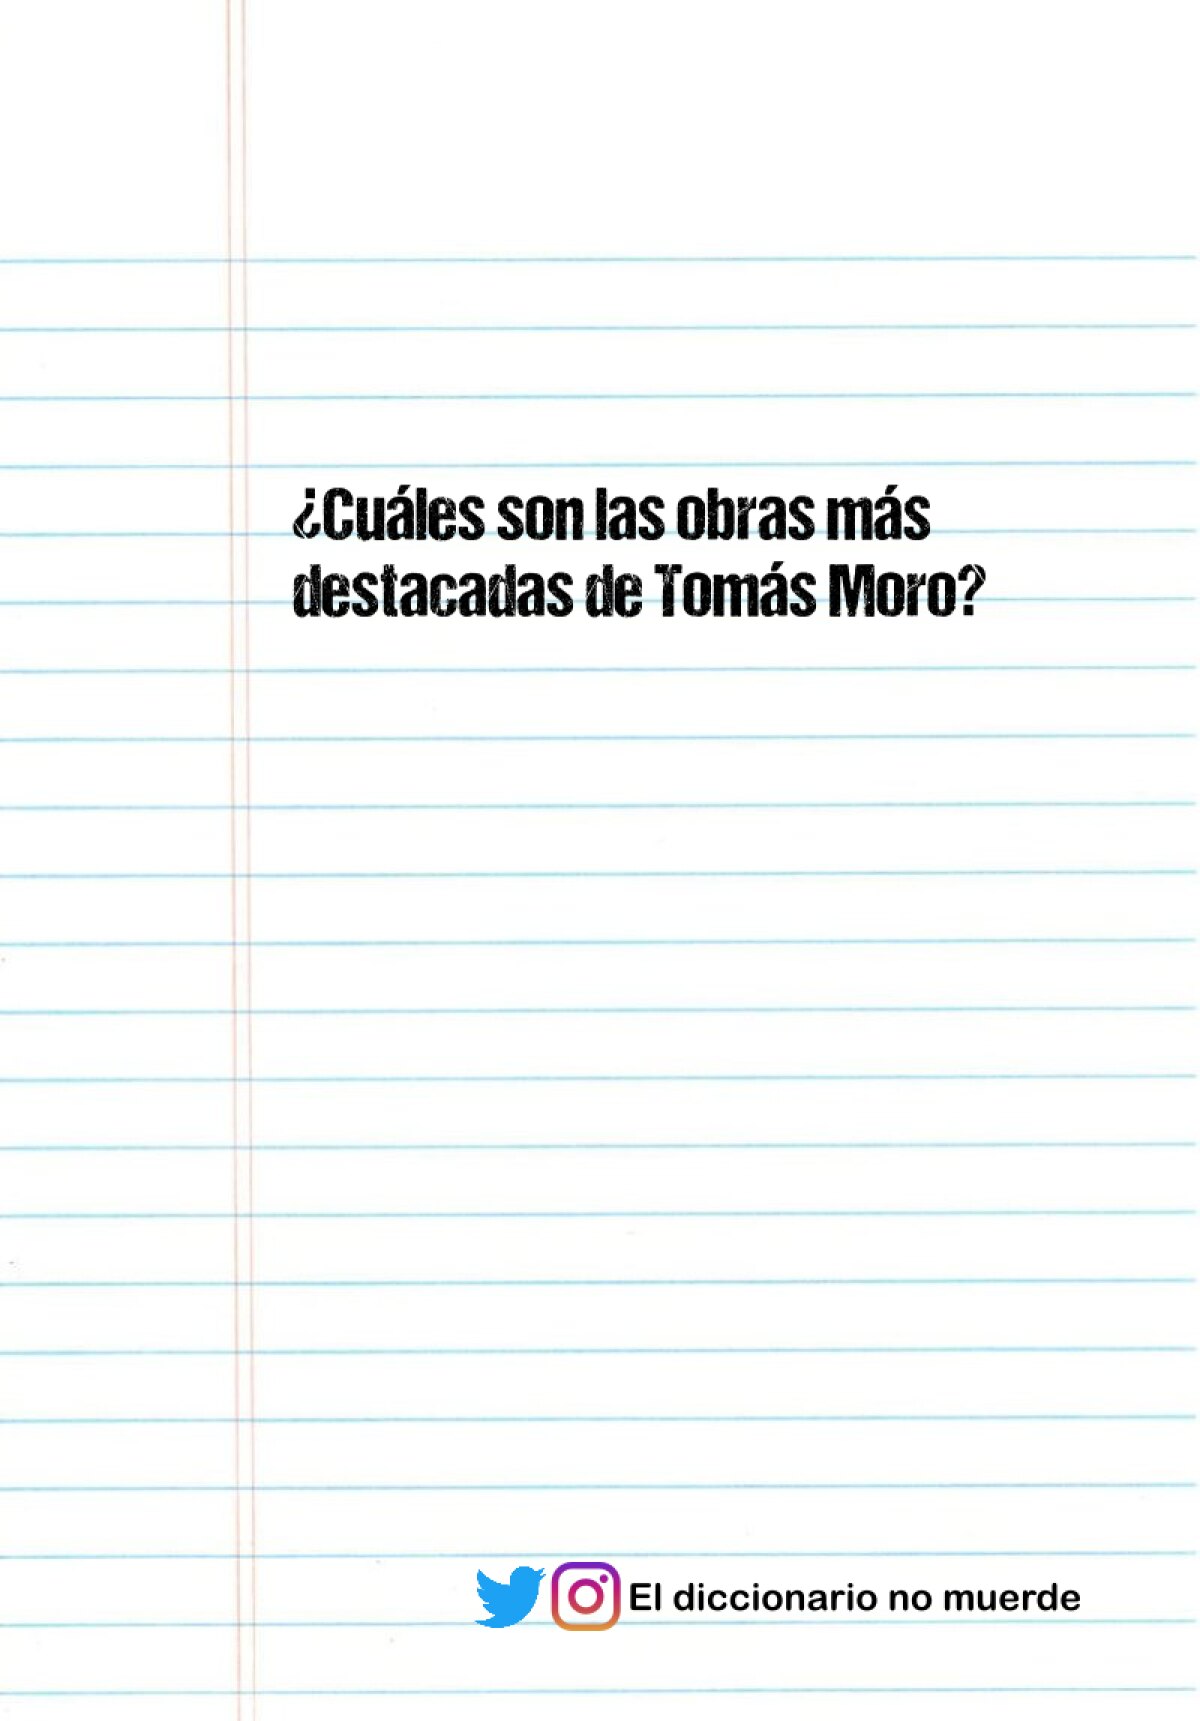 ¿Cuáles son las obras más destacadas de Tomás Moro?